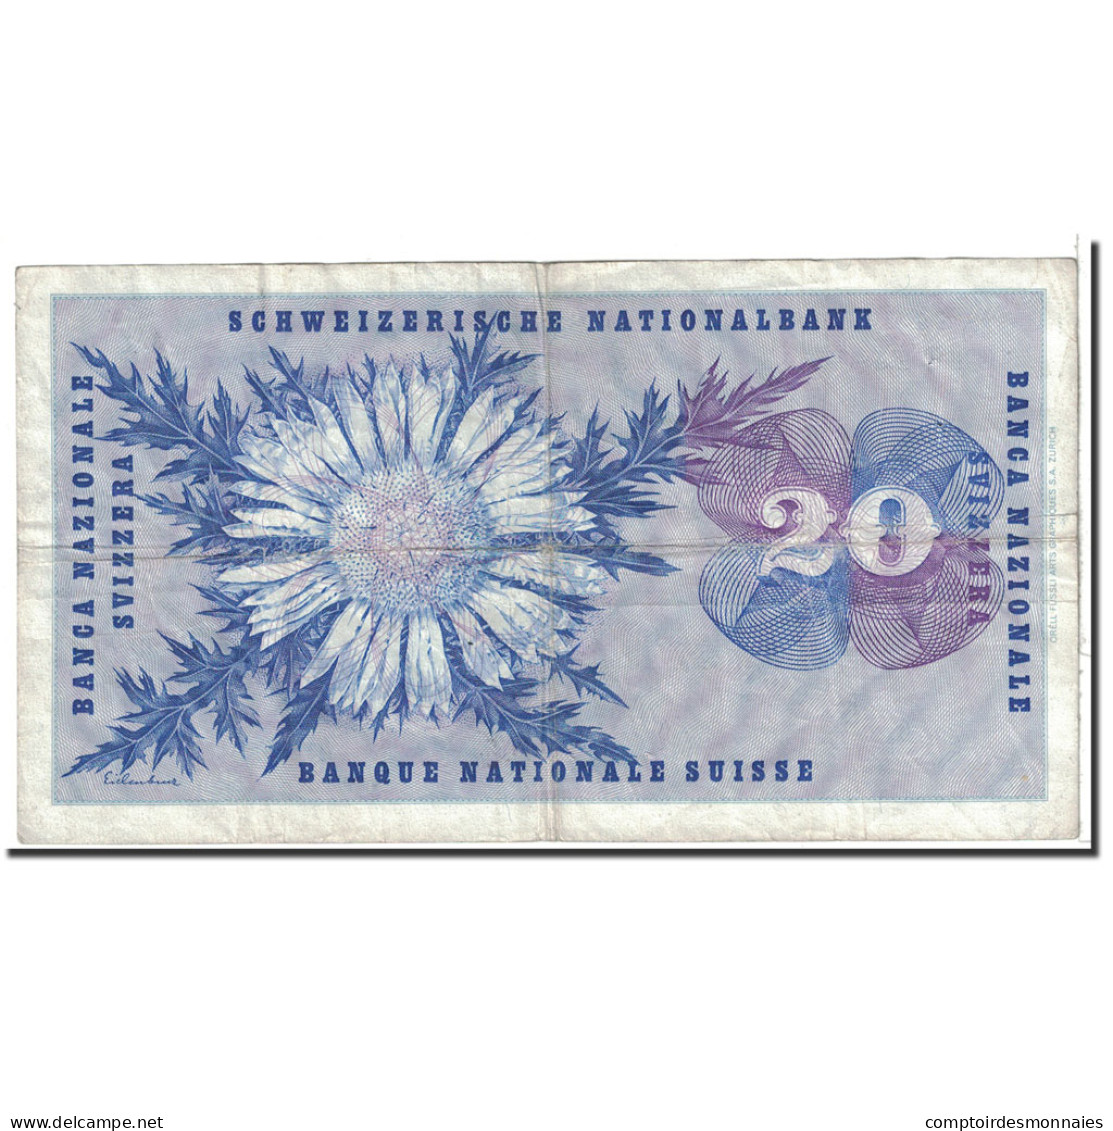 Billet, Suisse, 20 Franken, 1970, 1970-01-05, KM:46r, TTB - Schweiz